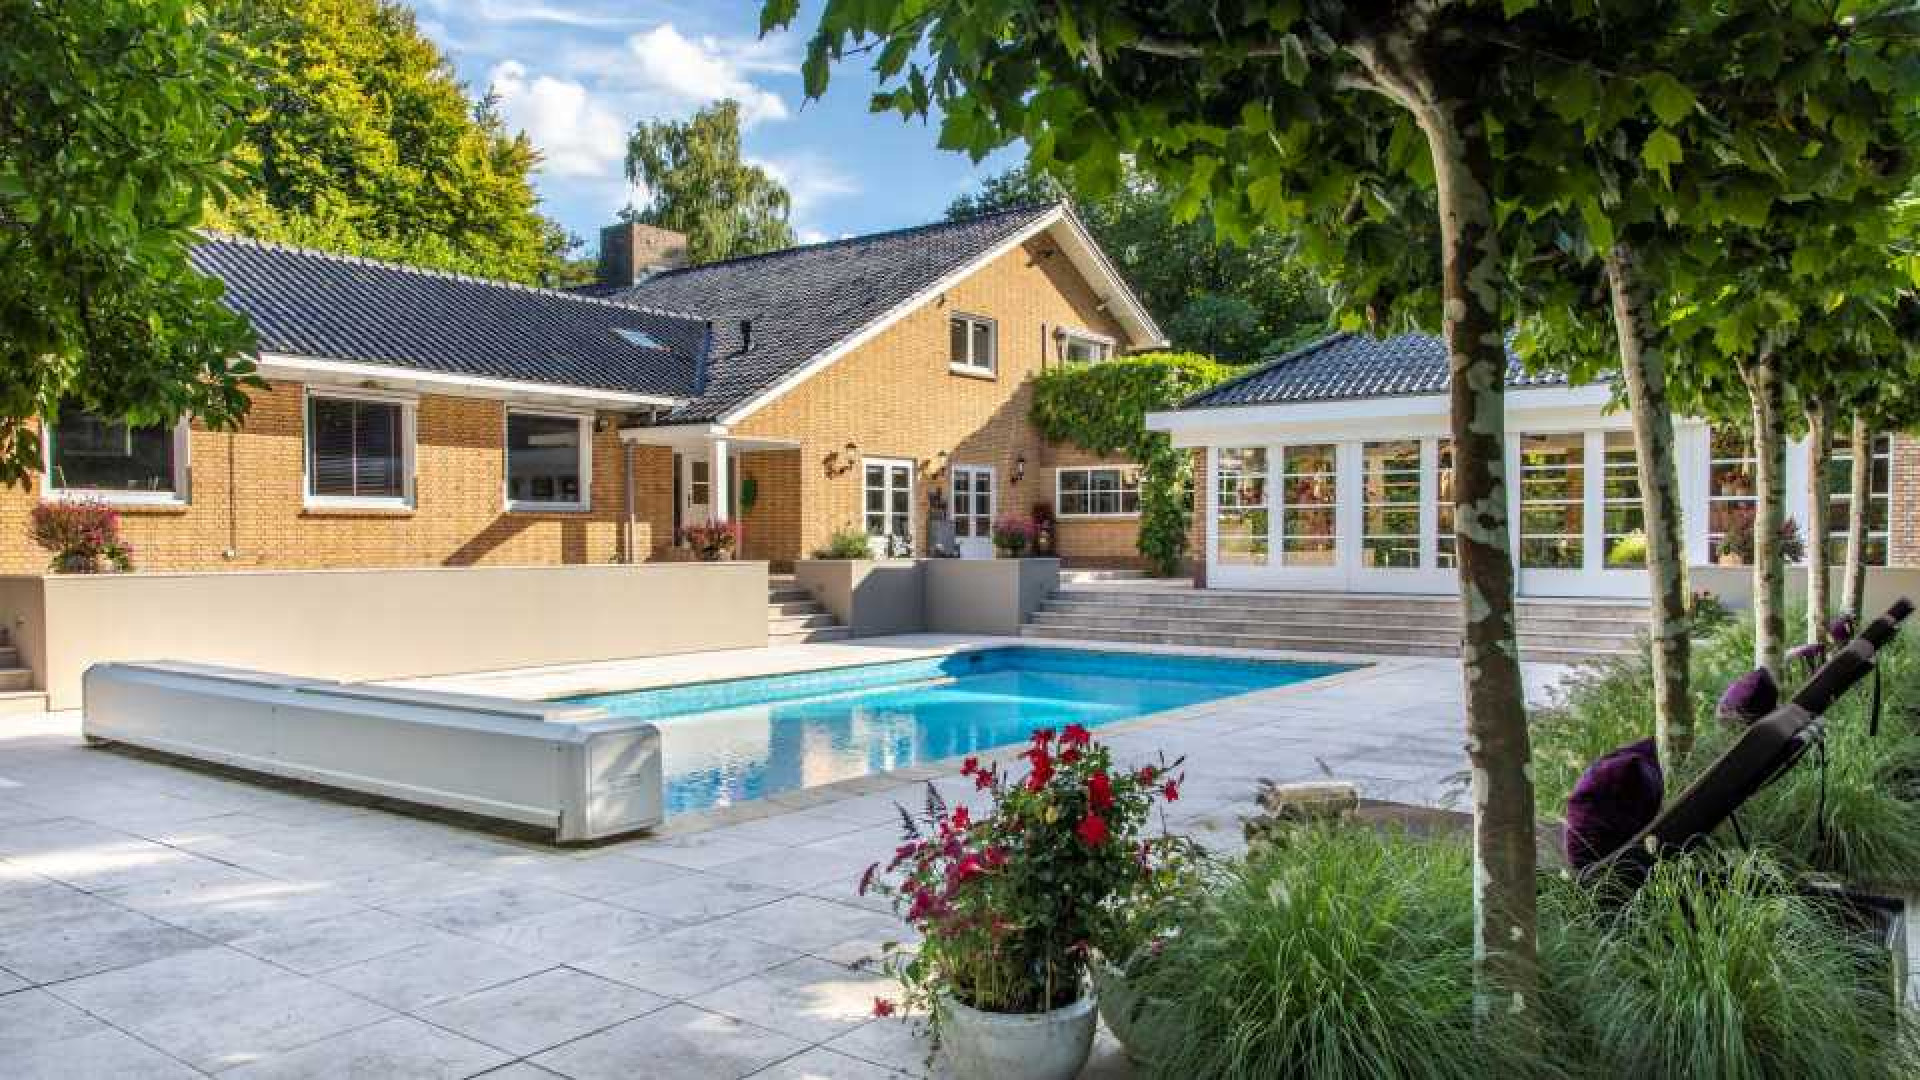 Rene Froger zet zijn villa met zwembad, tennisbaan, gym, sauna en kantoorvilla te koop. Zie foto's